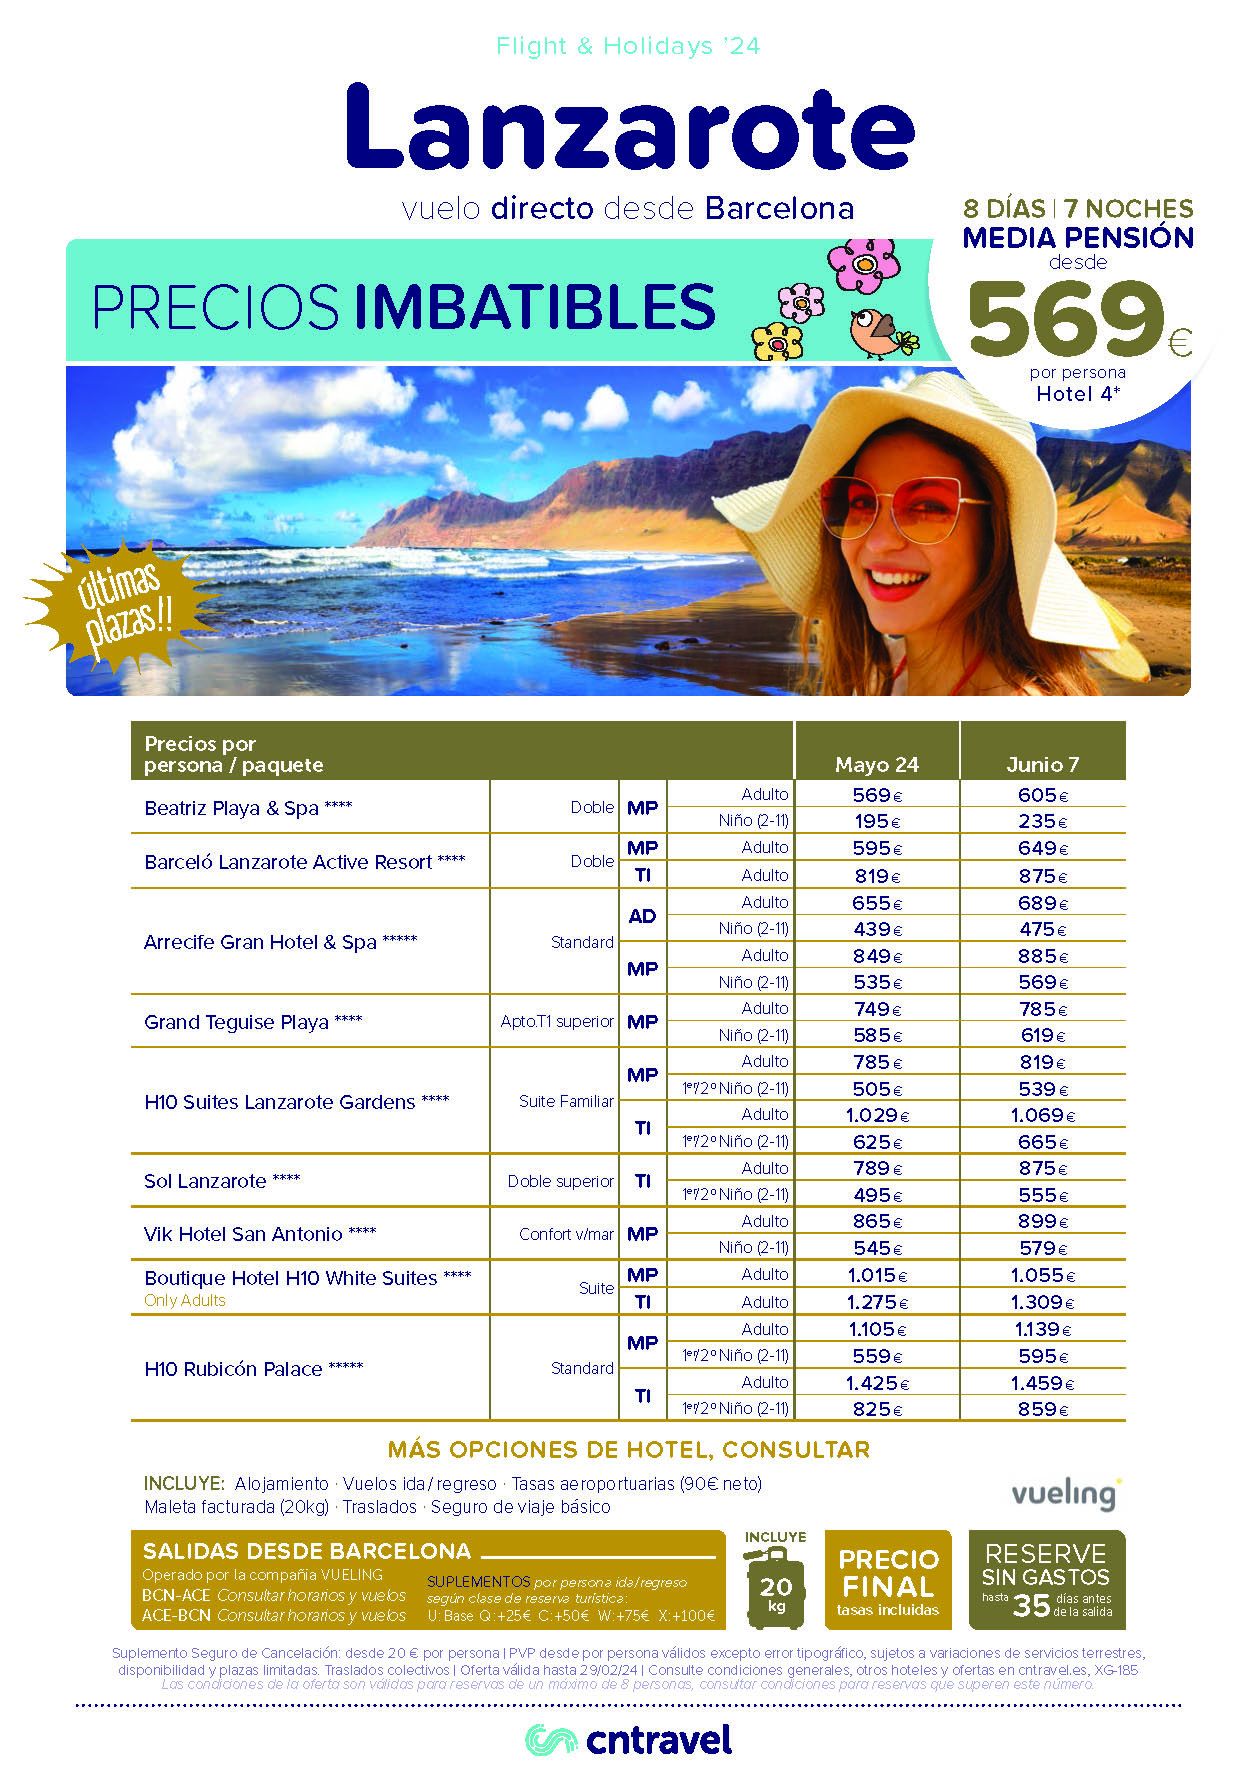 Ofertas CN Travel Mayo Junio 2024 Estancia en Lanzarote 8 dias Hoteles 4 estrellas Media Pension salida en vuelo directo desde Barcelona